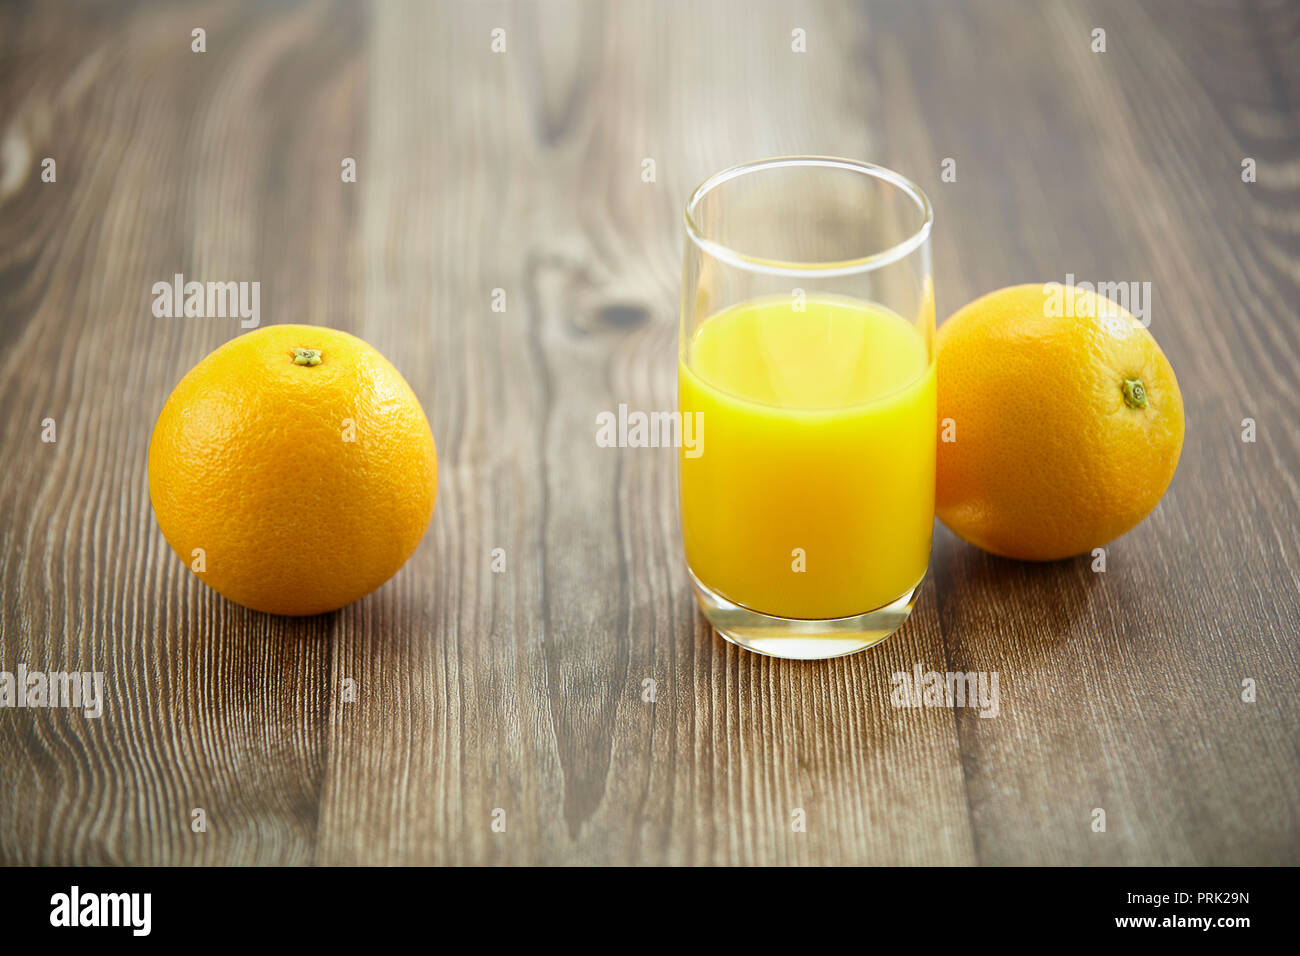 Zwei Orangen und ein Glas Orangensaft auf der Oberfläche des Holzes. Stockfoto